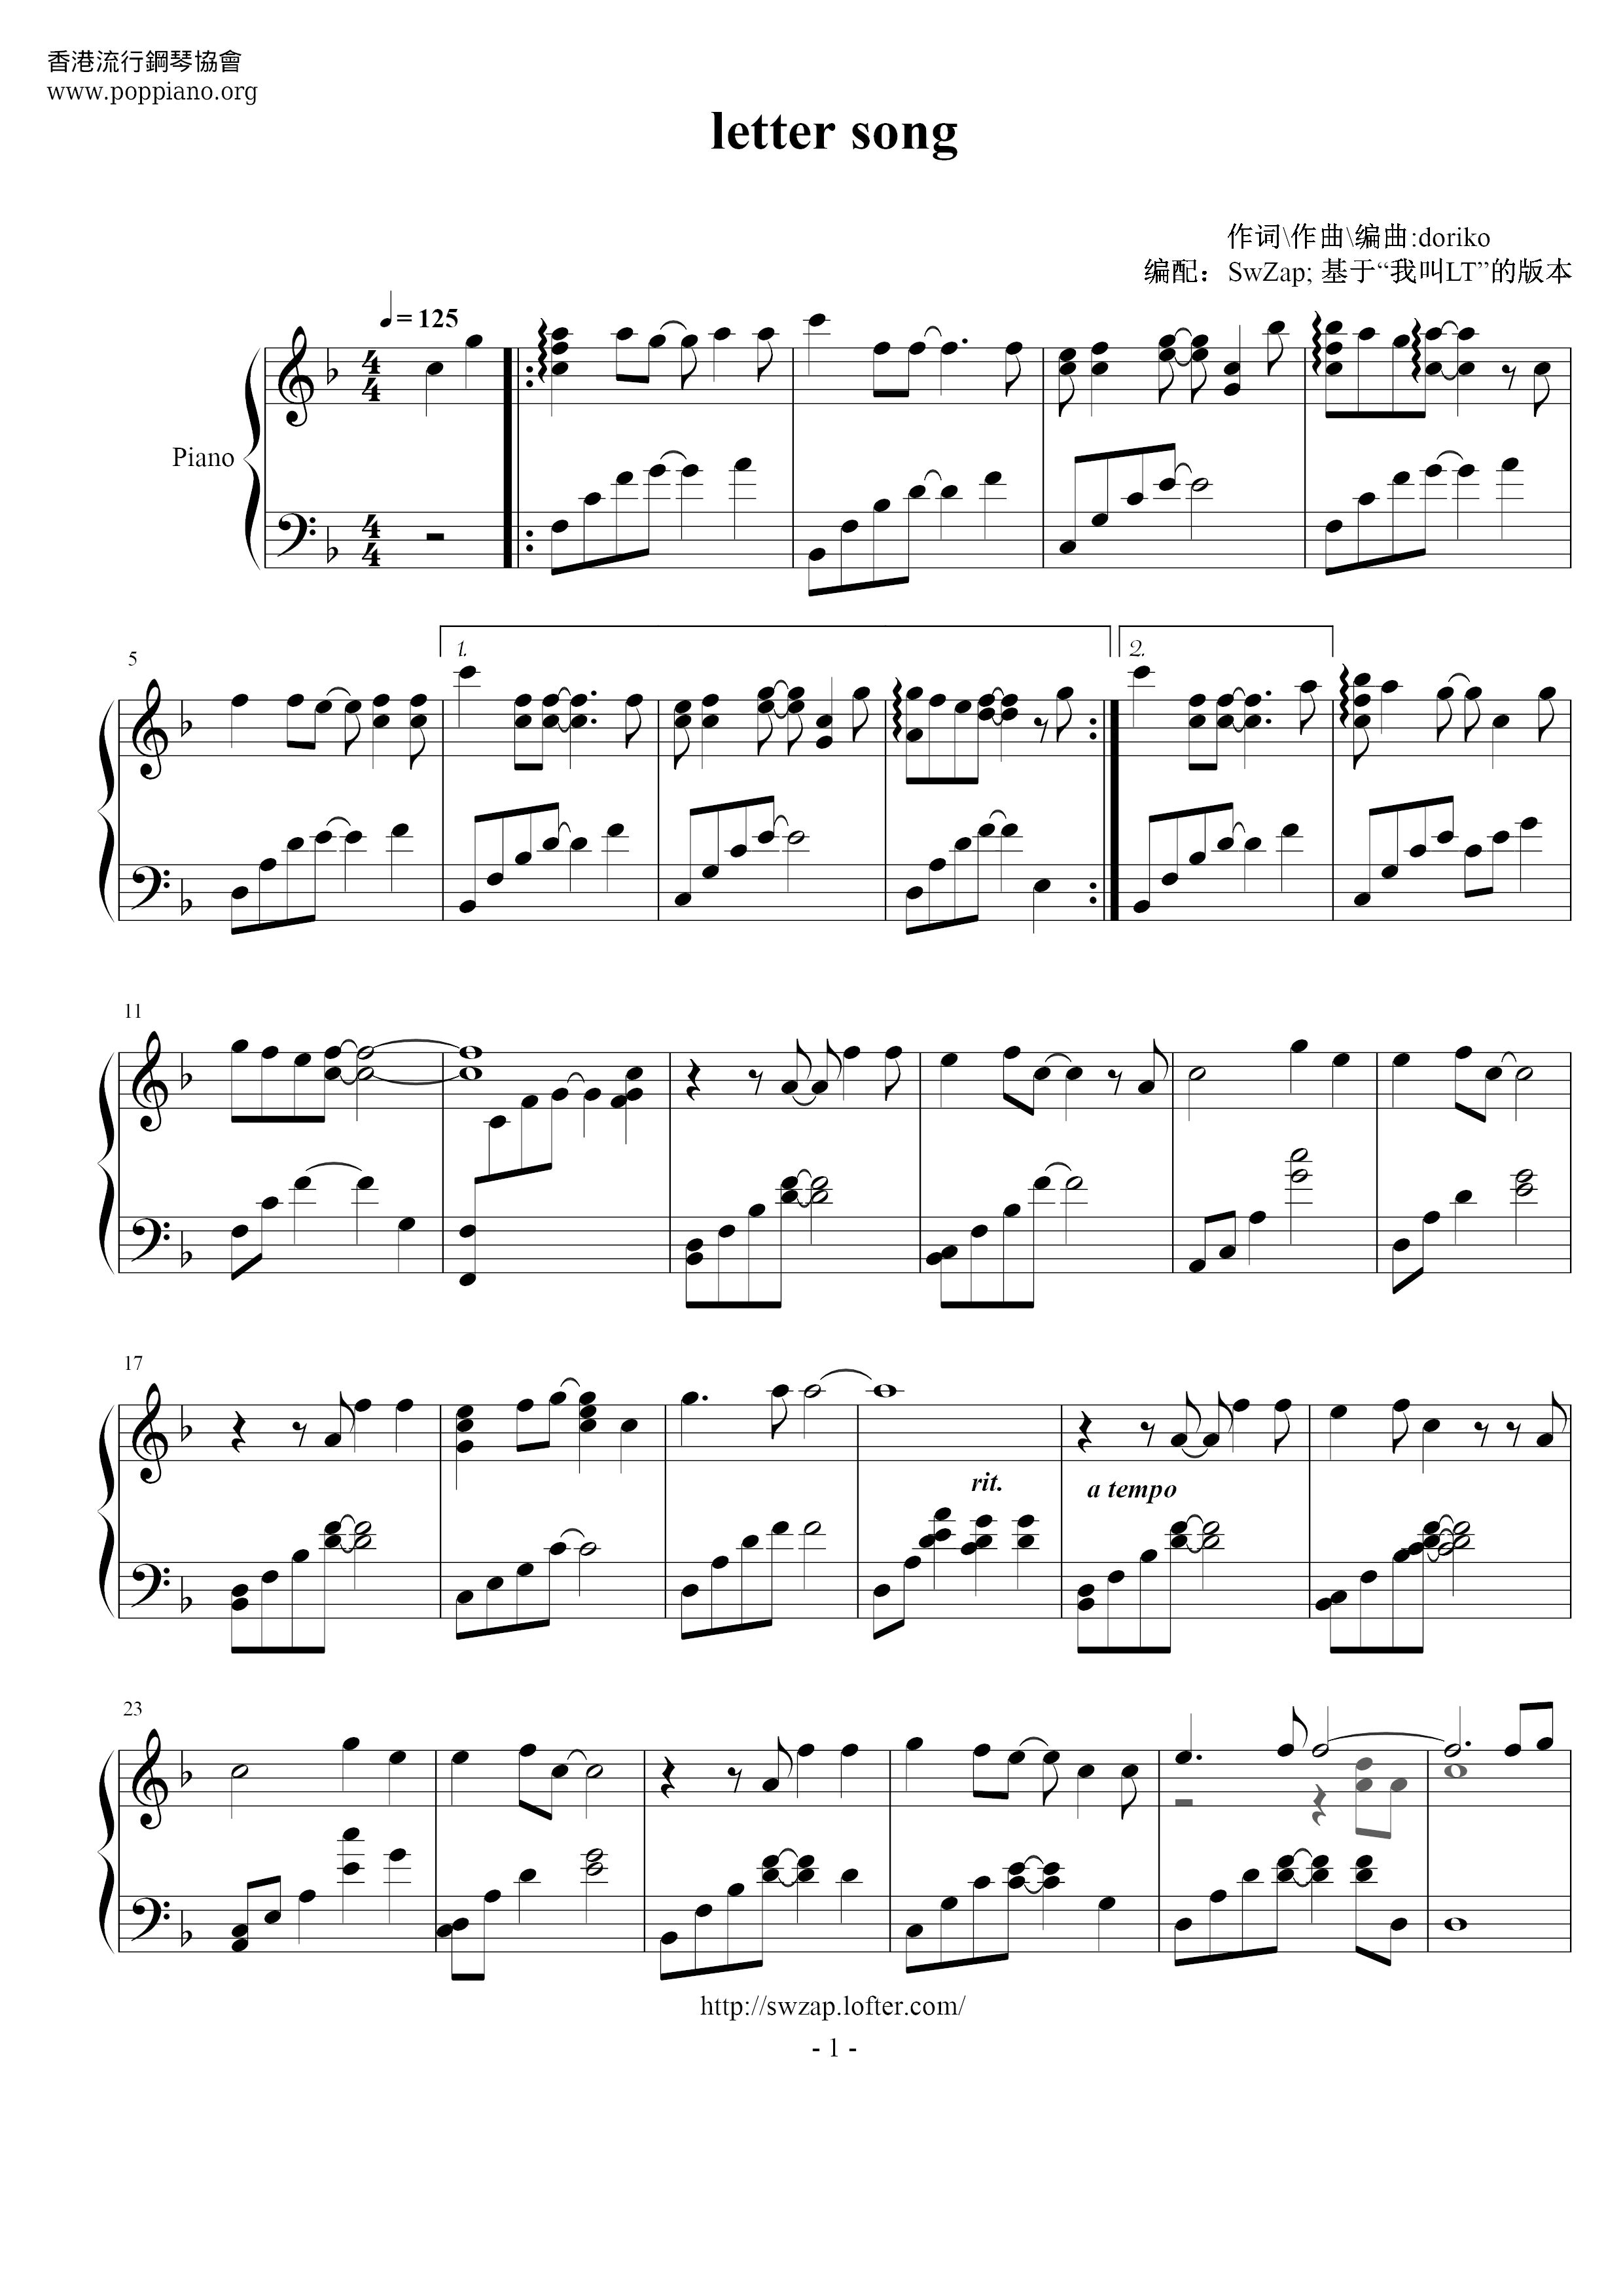 Letter Song Score